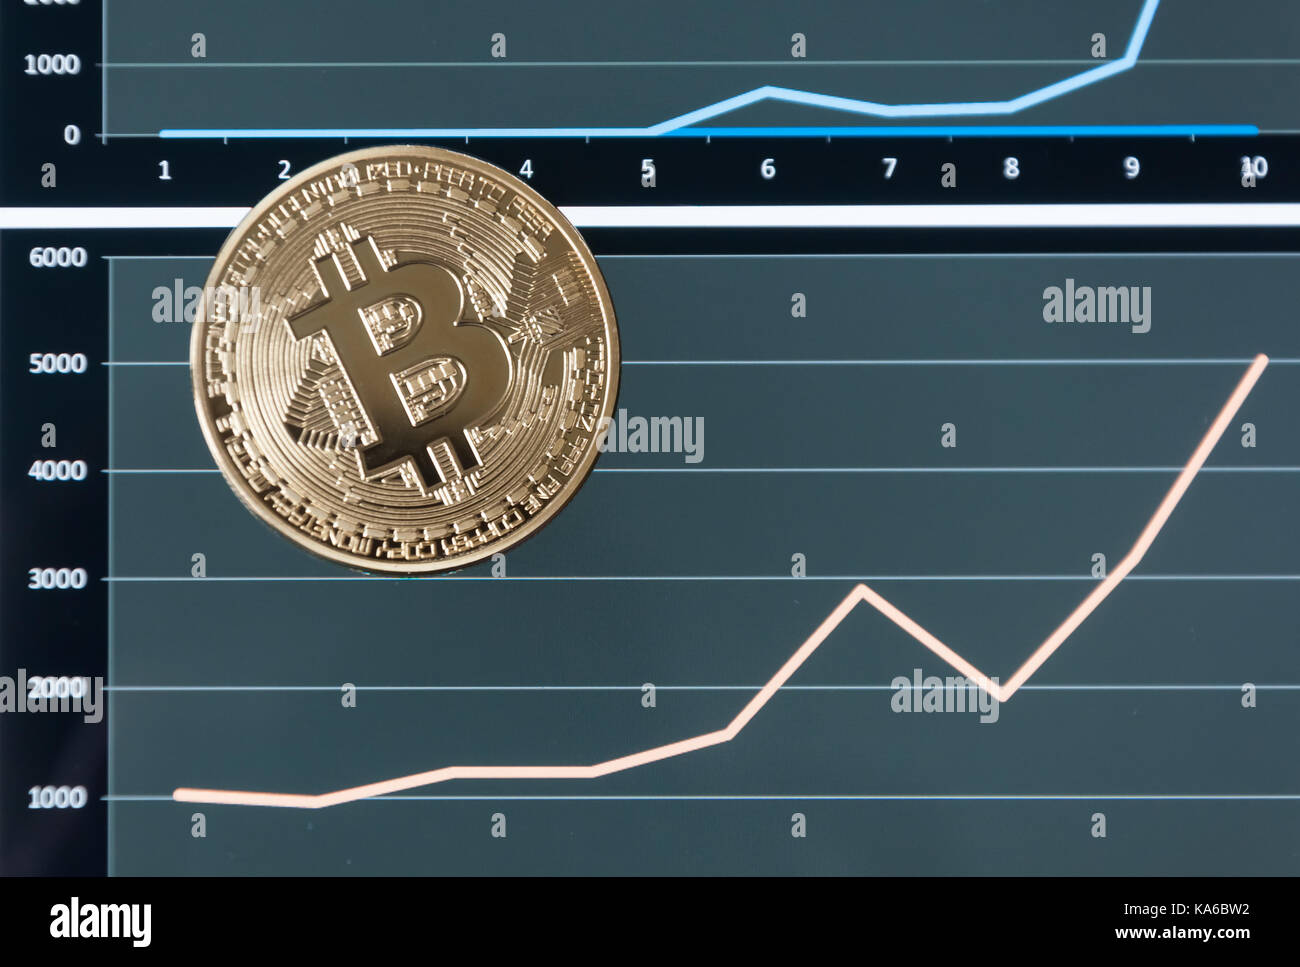 Crypto Coin Values Chart